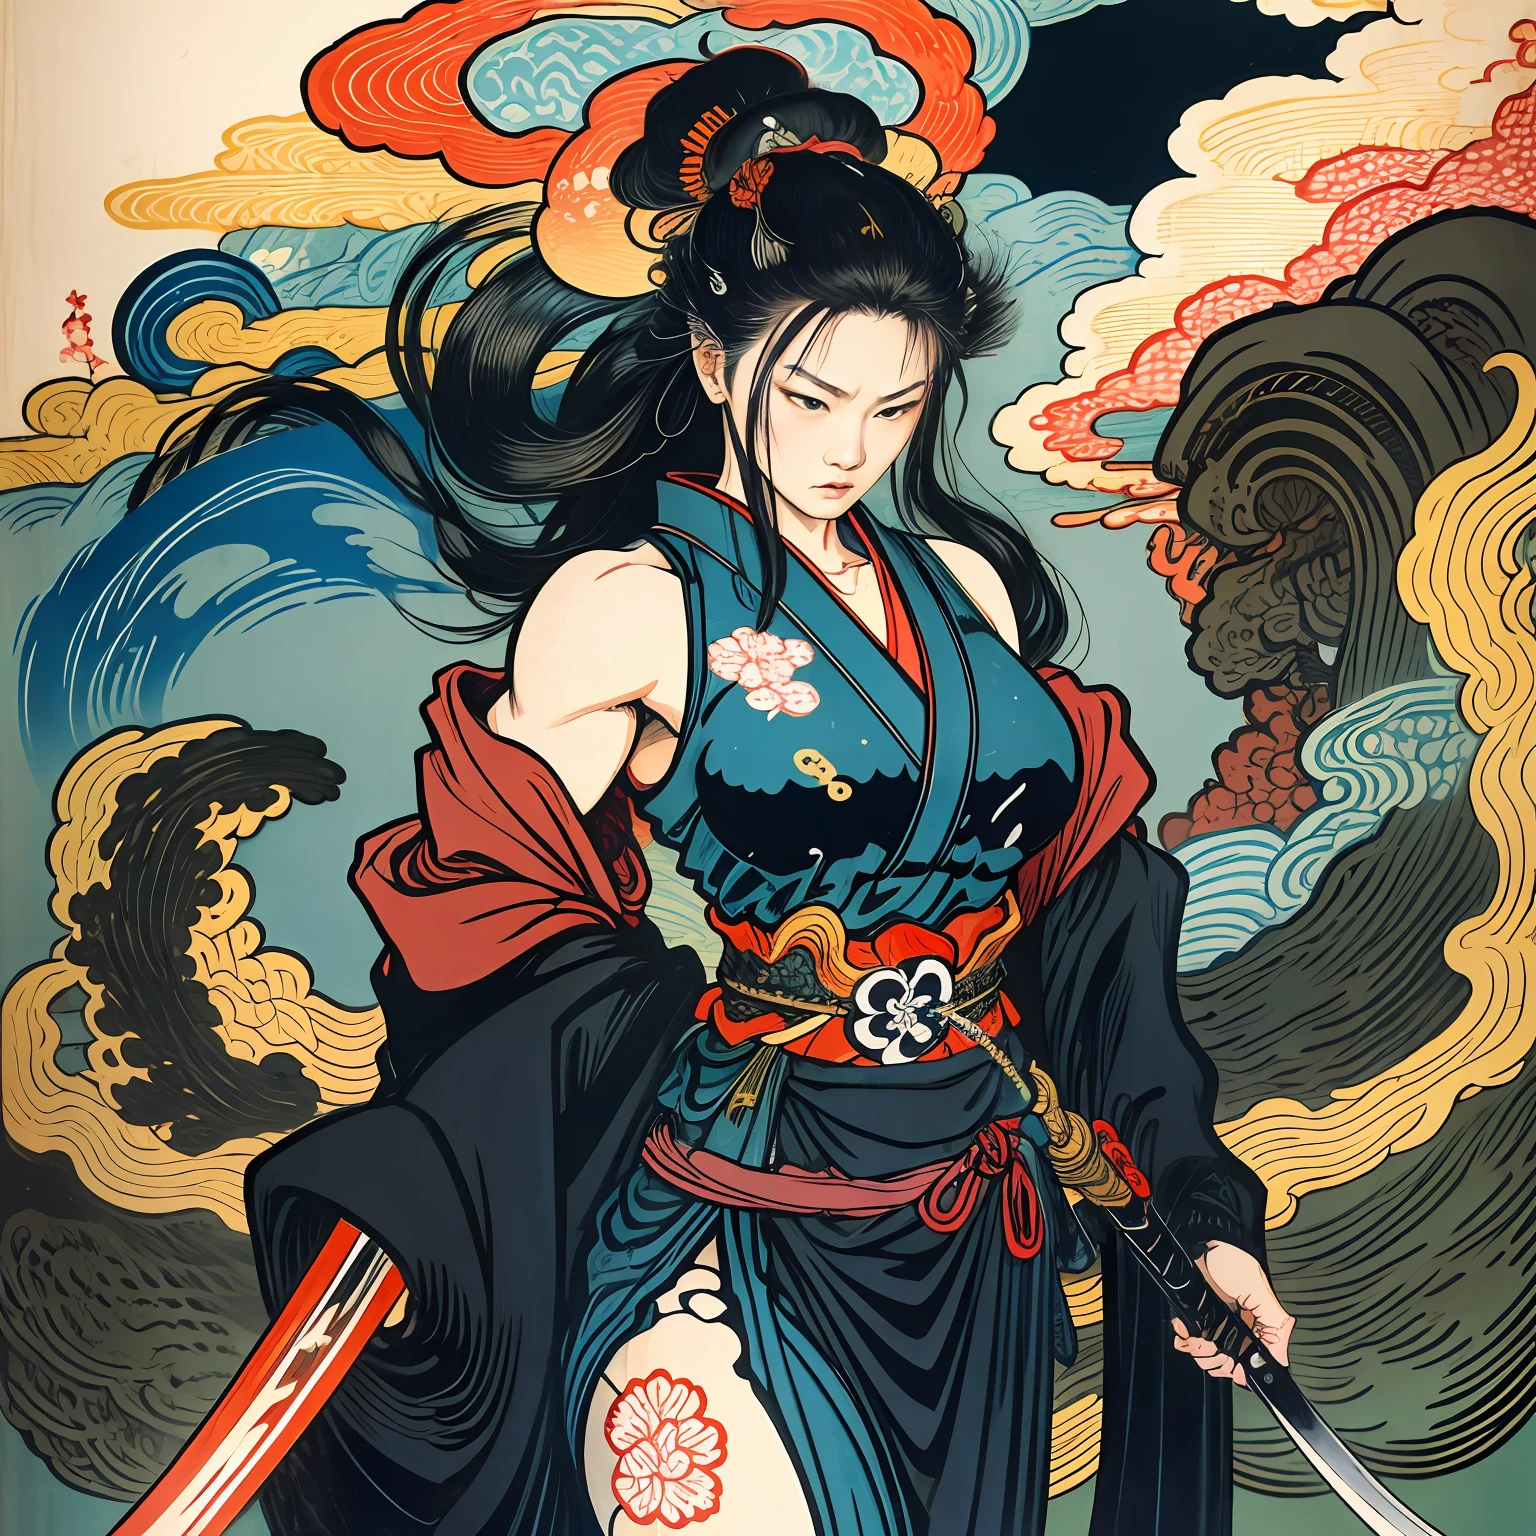 É uma pintura de corpo inteiro com cores naturais com desenhos de linhas no estilo Katsushika Hokusai.. A espadachim é magra e musculosa. Samurai Feminino do Japão. Com uma expressão digna mas feminina de determinação, ela confronta espíritos malignos. Ela tem o cabelo preto longo. A parte superior de seu corpo está coberta por um quimono preto e seu hakama vai até os joelhos.. Na mão direita ela segura uma espada japonesa com uma parte de espada mais longa. na mais alta qualidade, obra-prima de alta resolução estilo ukiyo-e relâmpago e chamas giratórias. Entre eles, a guerreira samurai está de pé com as costas retas, De frente.